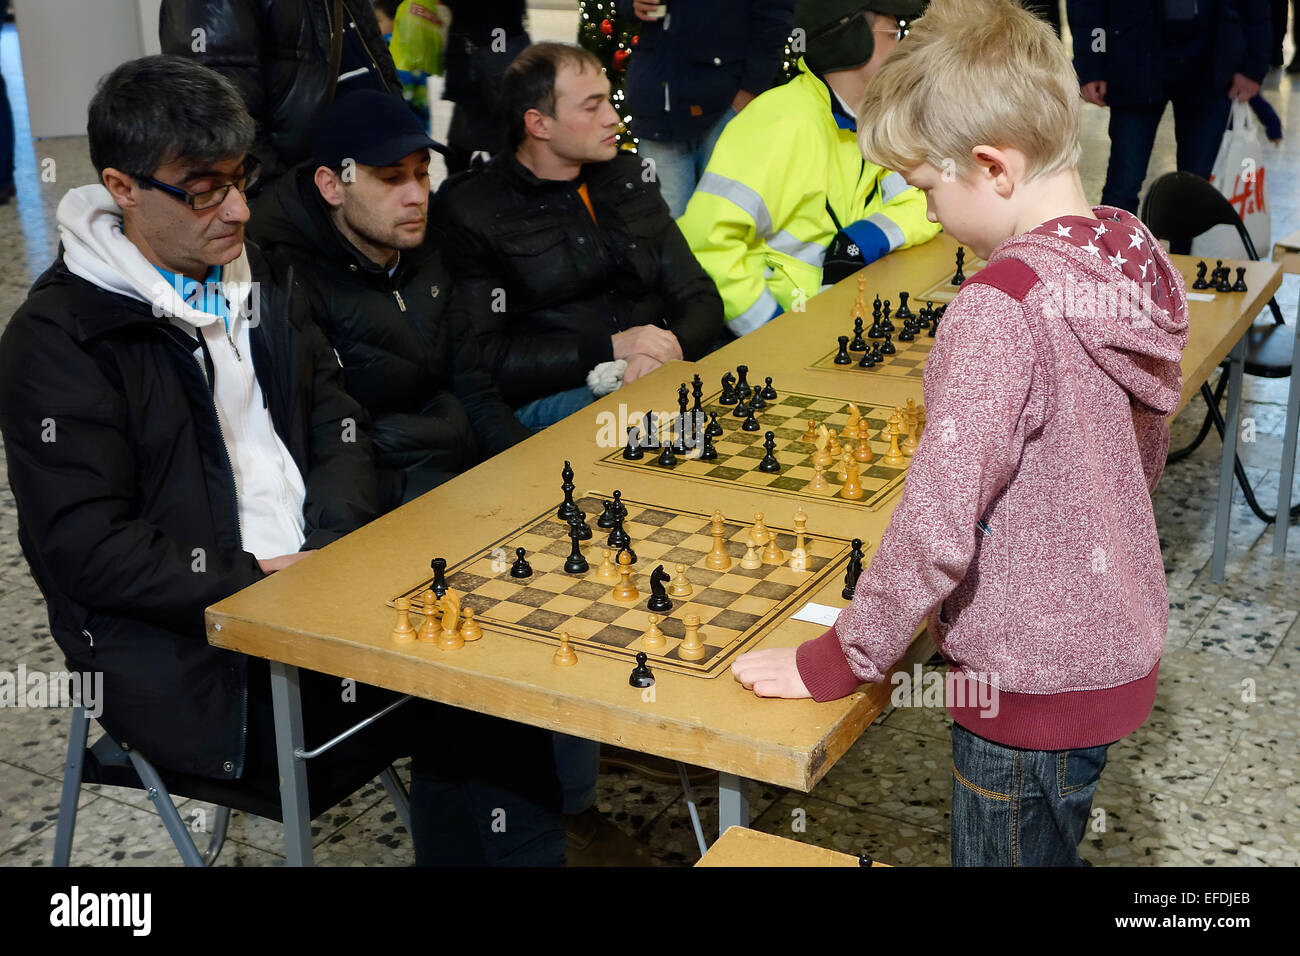 10 ans garçon joue aux échecs simultanée avec 4 participants adultes . Nordstan, Göteborg, Göteborg, Suède Banque D'Images